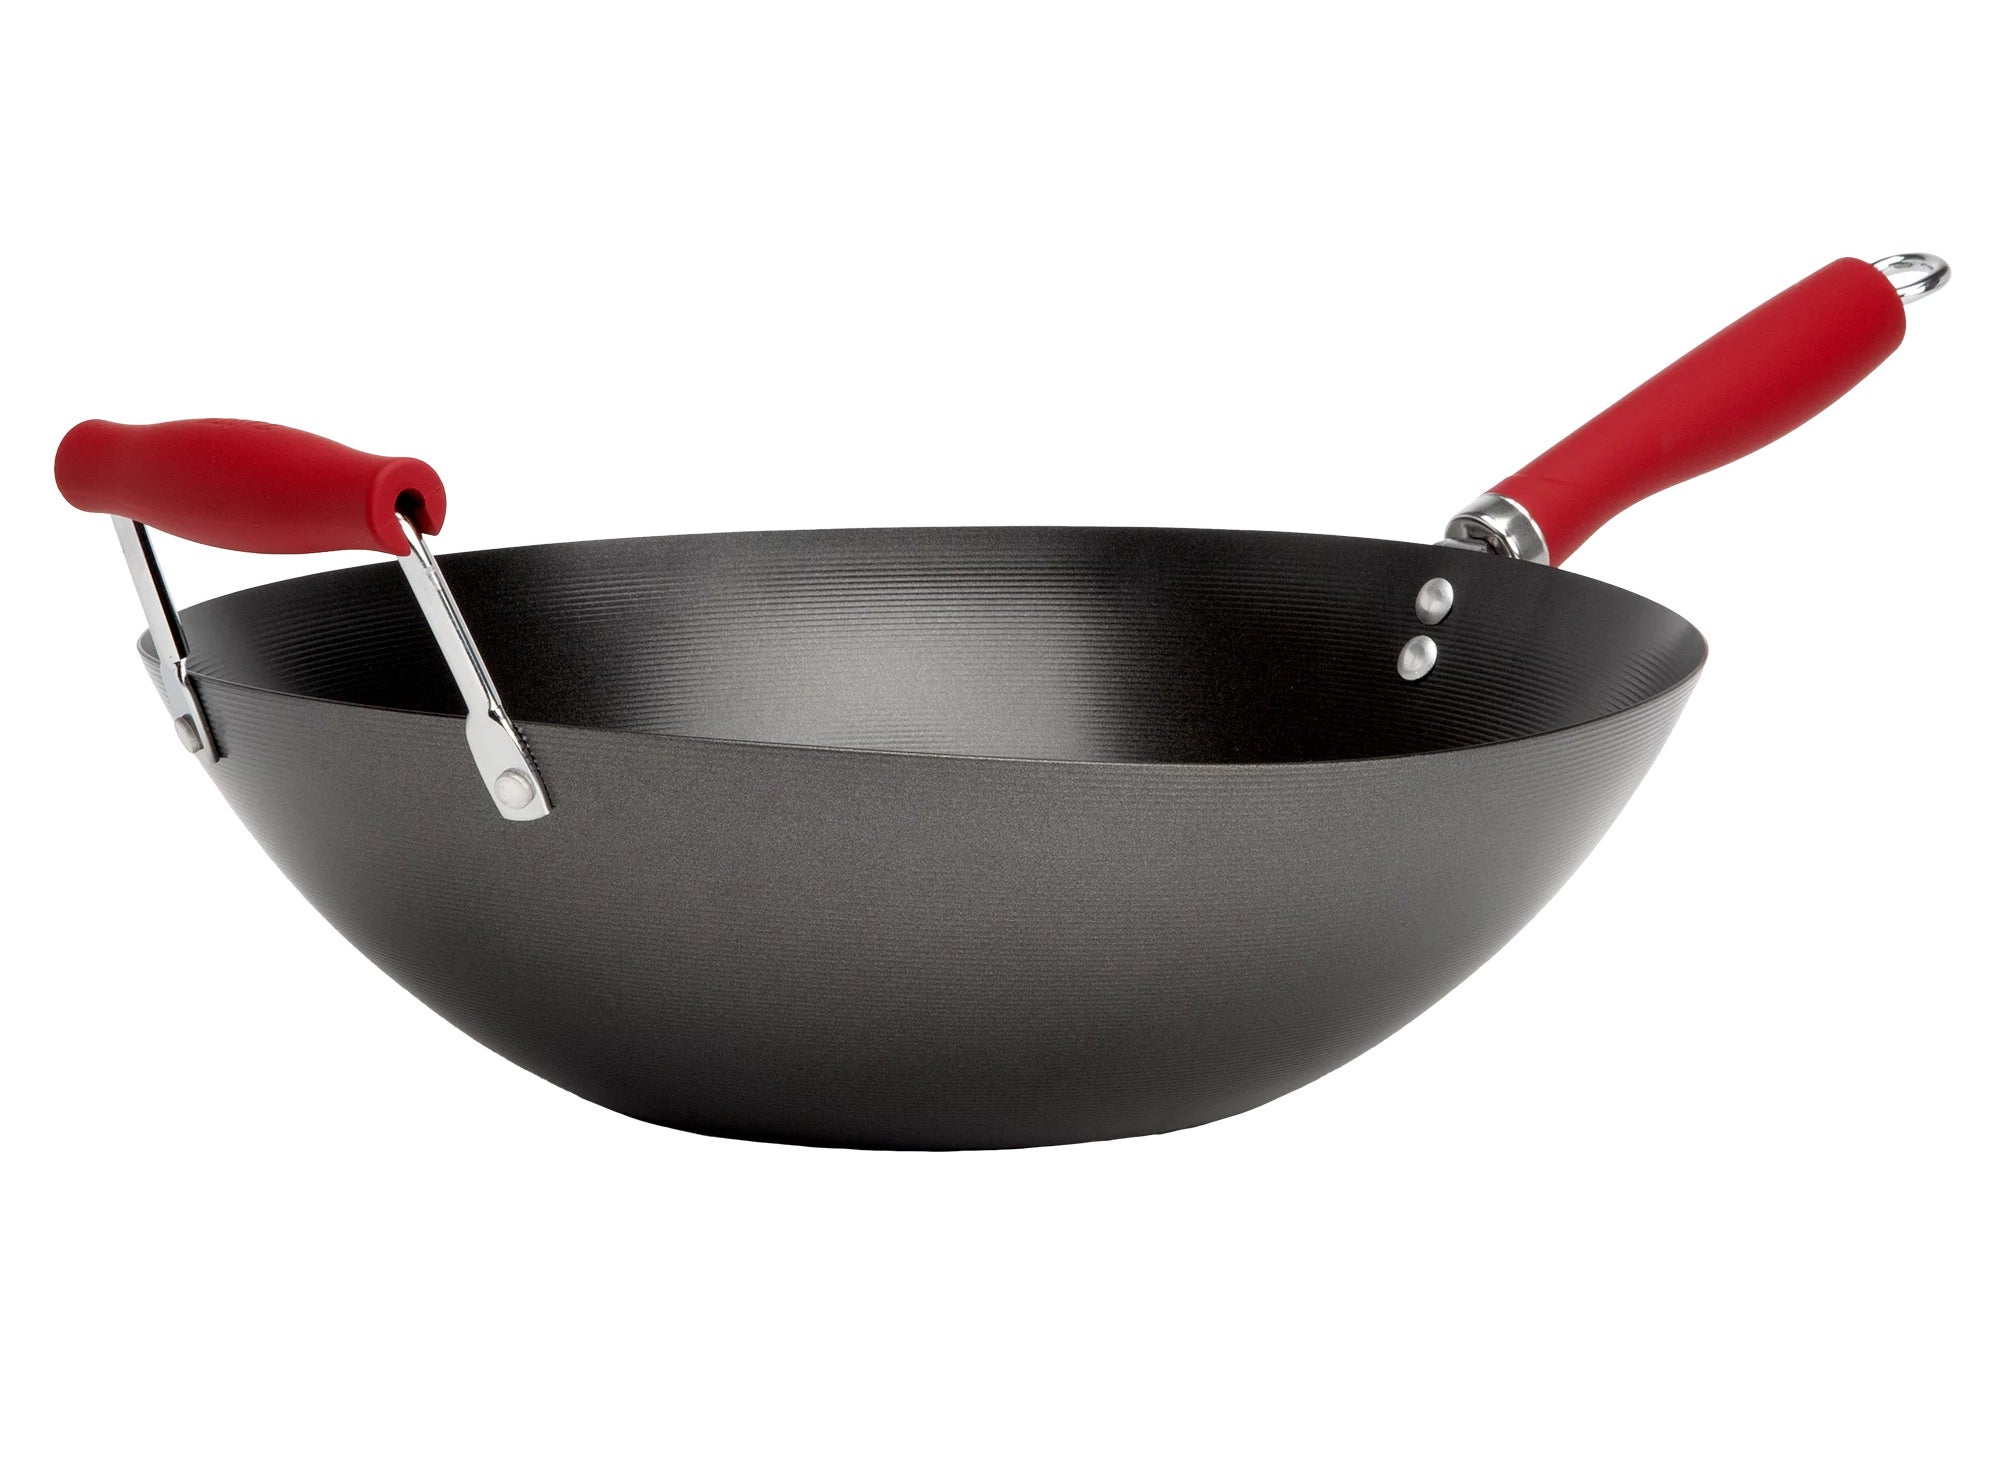 The wok pan